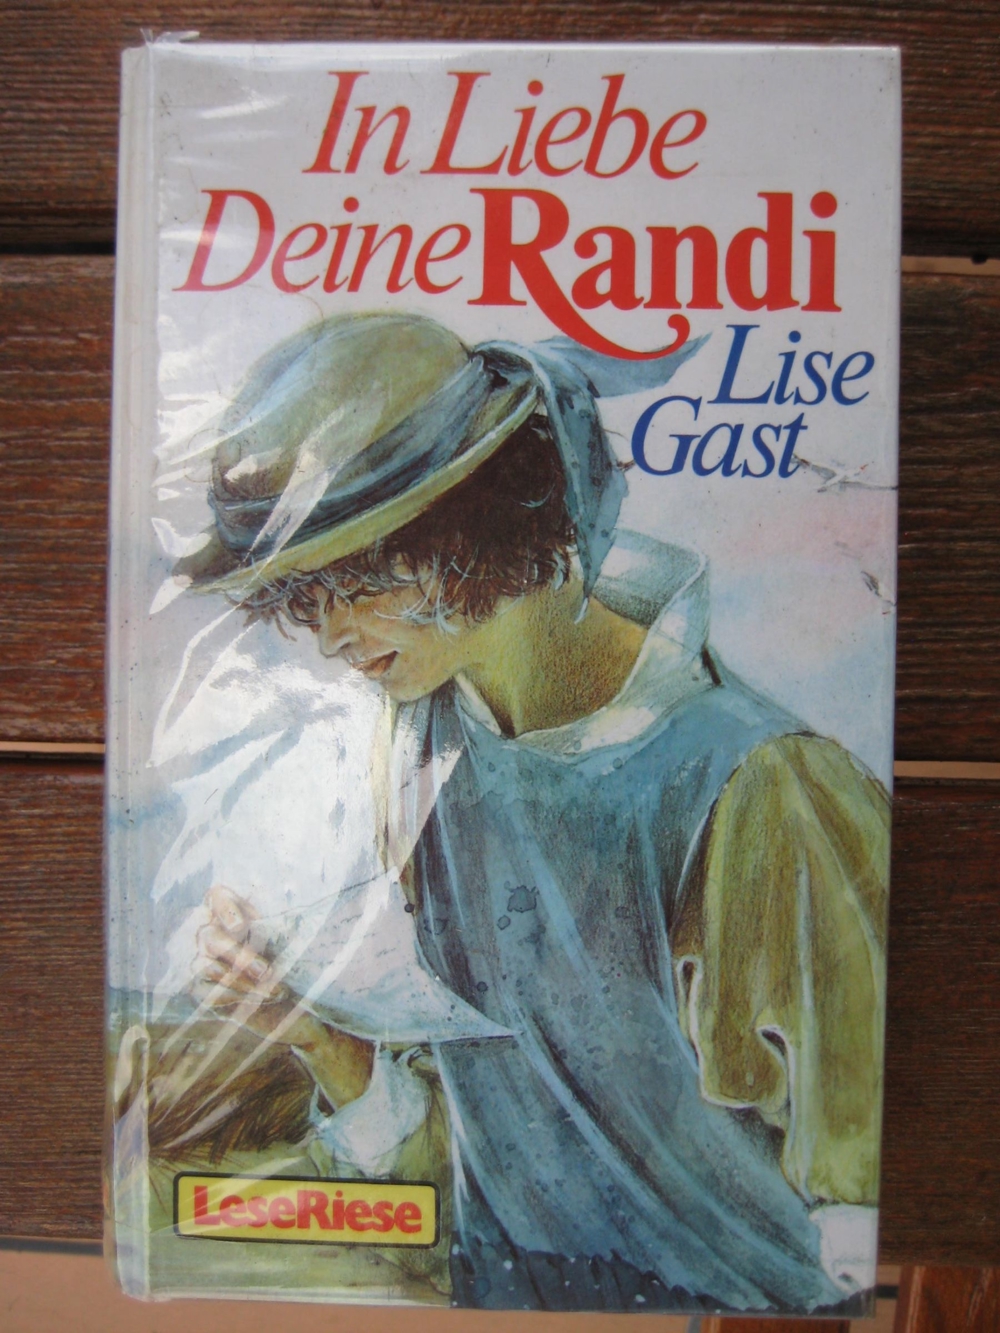 Schönes Pferdebuch In Liebe - Deine Randi von Lise Gast, Loewe Verlag, stammt 1988, 344 Seiten